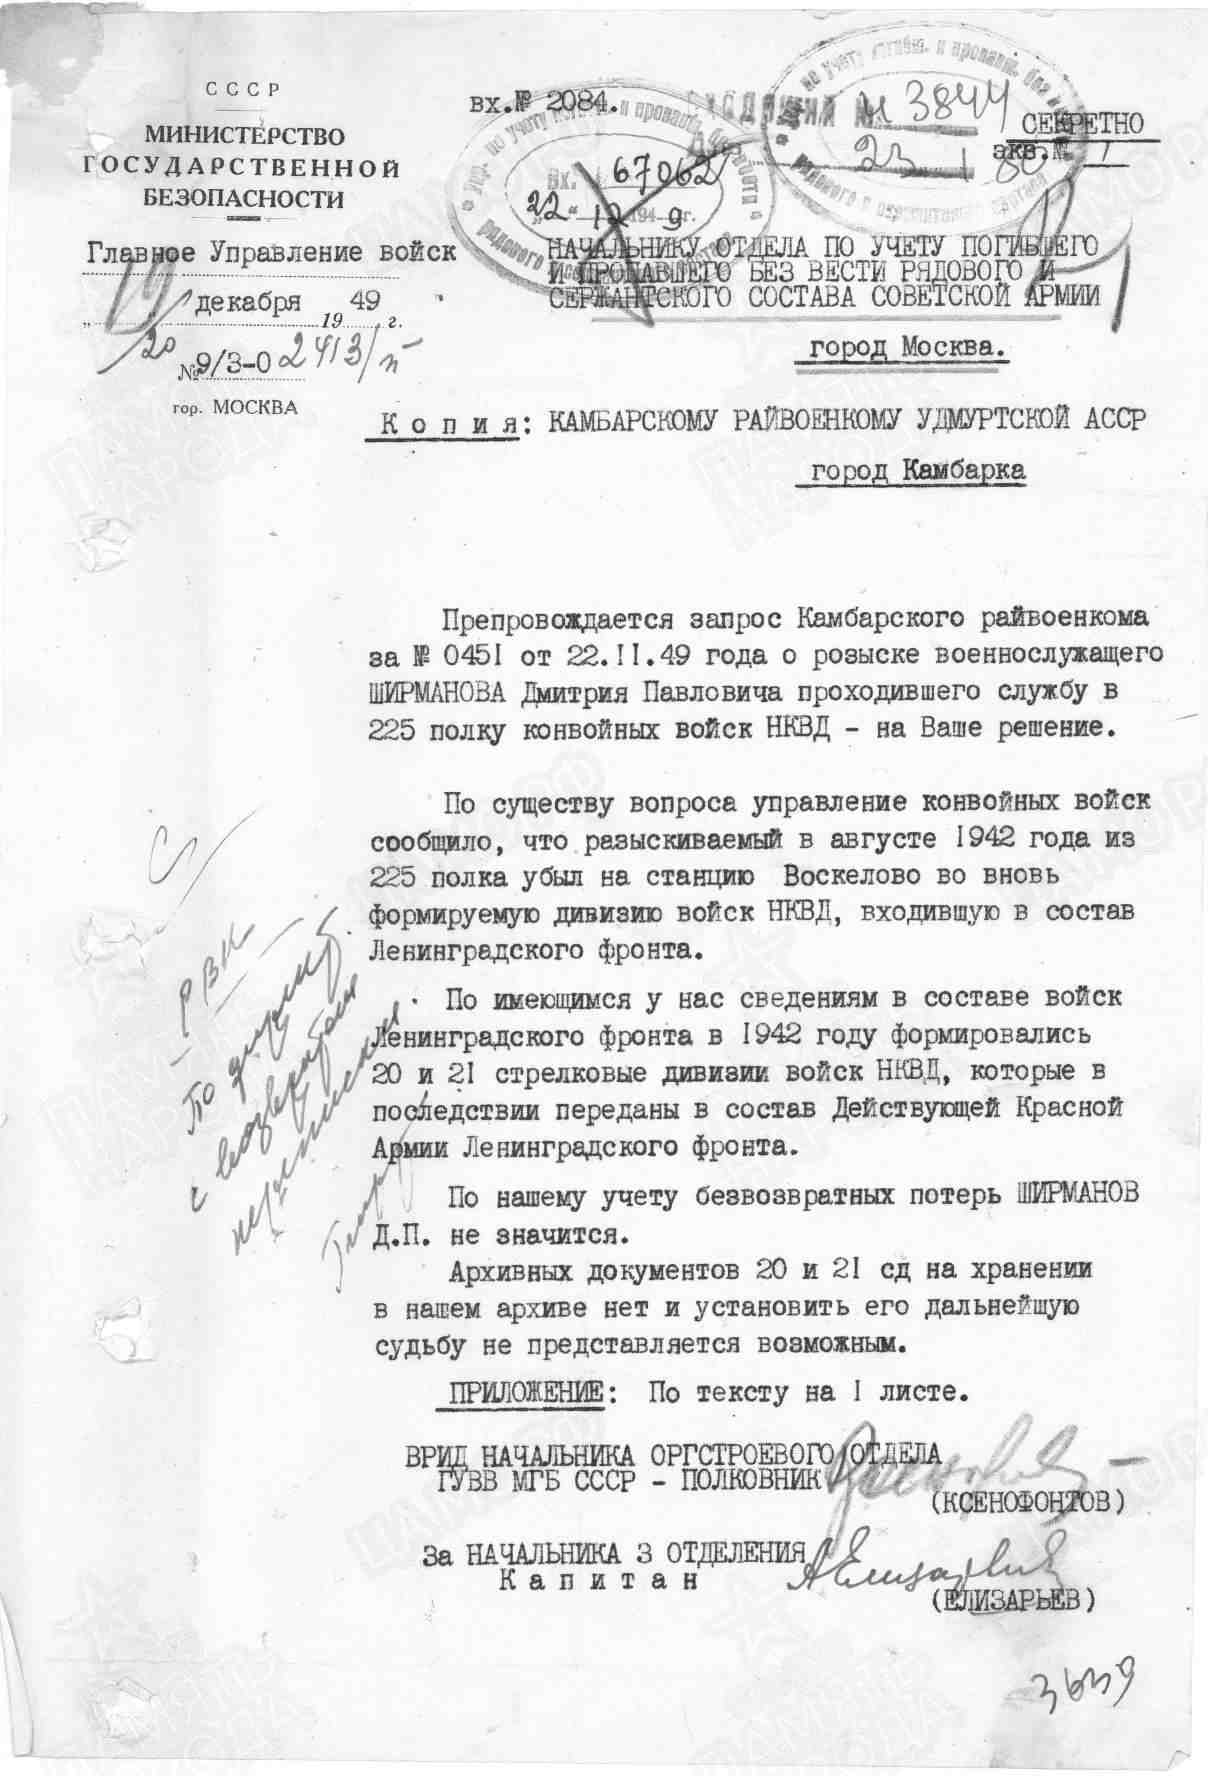 Запрос Главного Управления войск на розыск, 19.12.1949